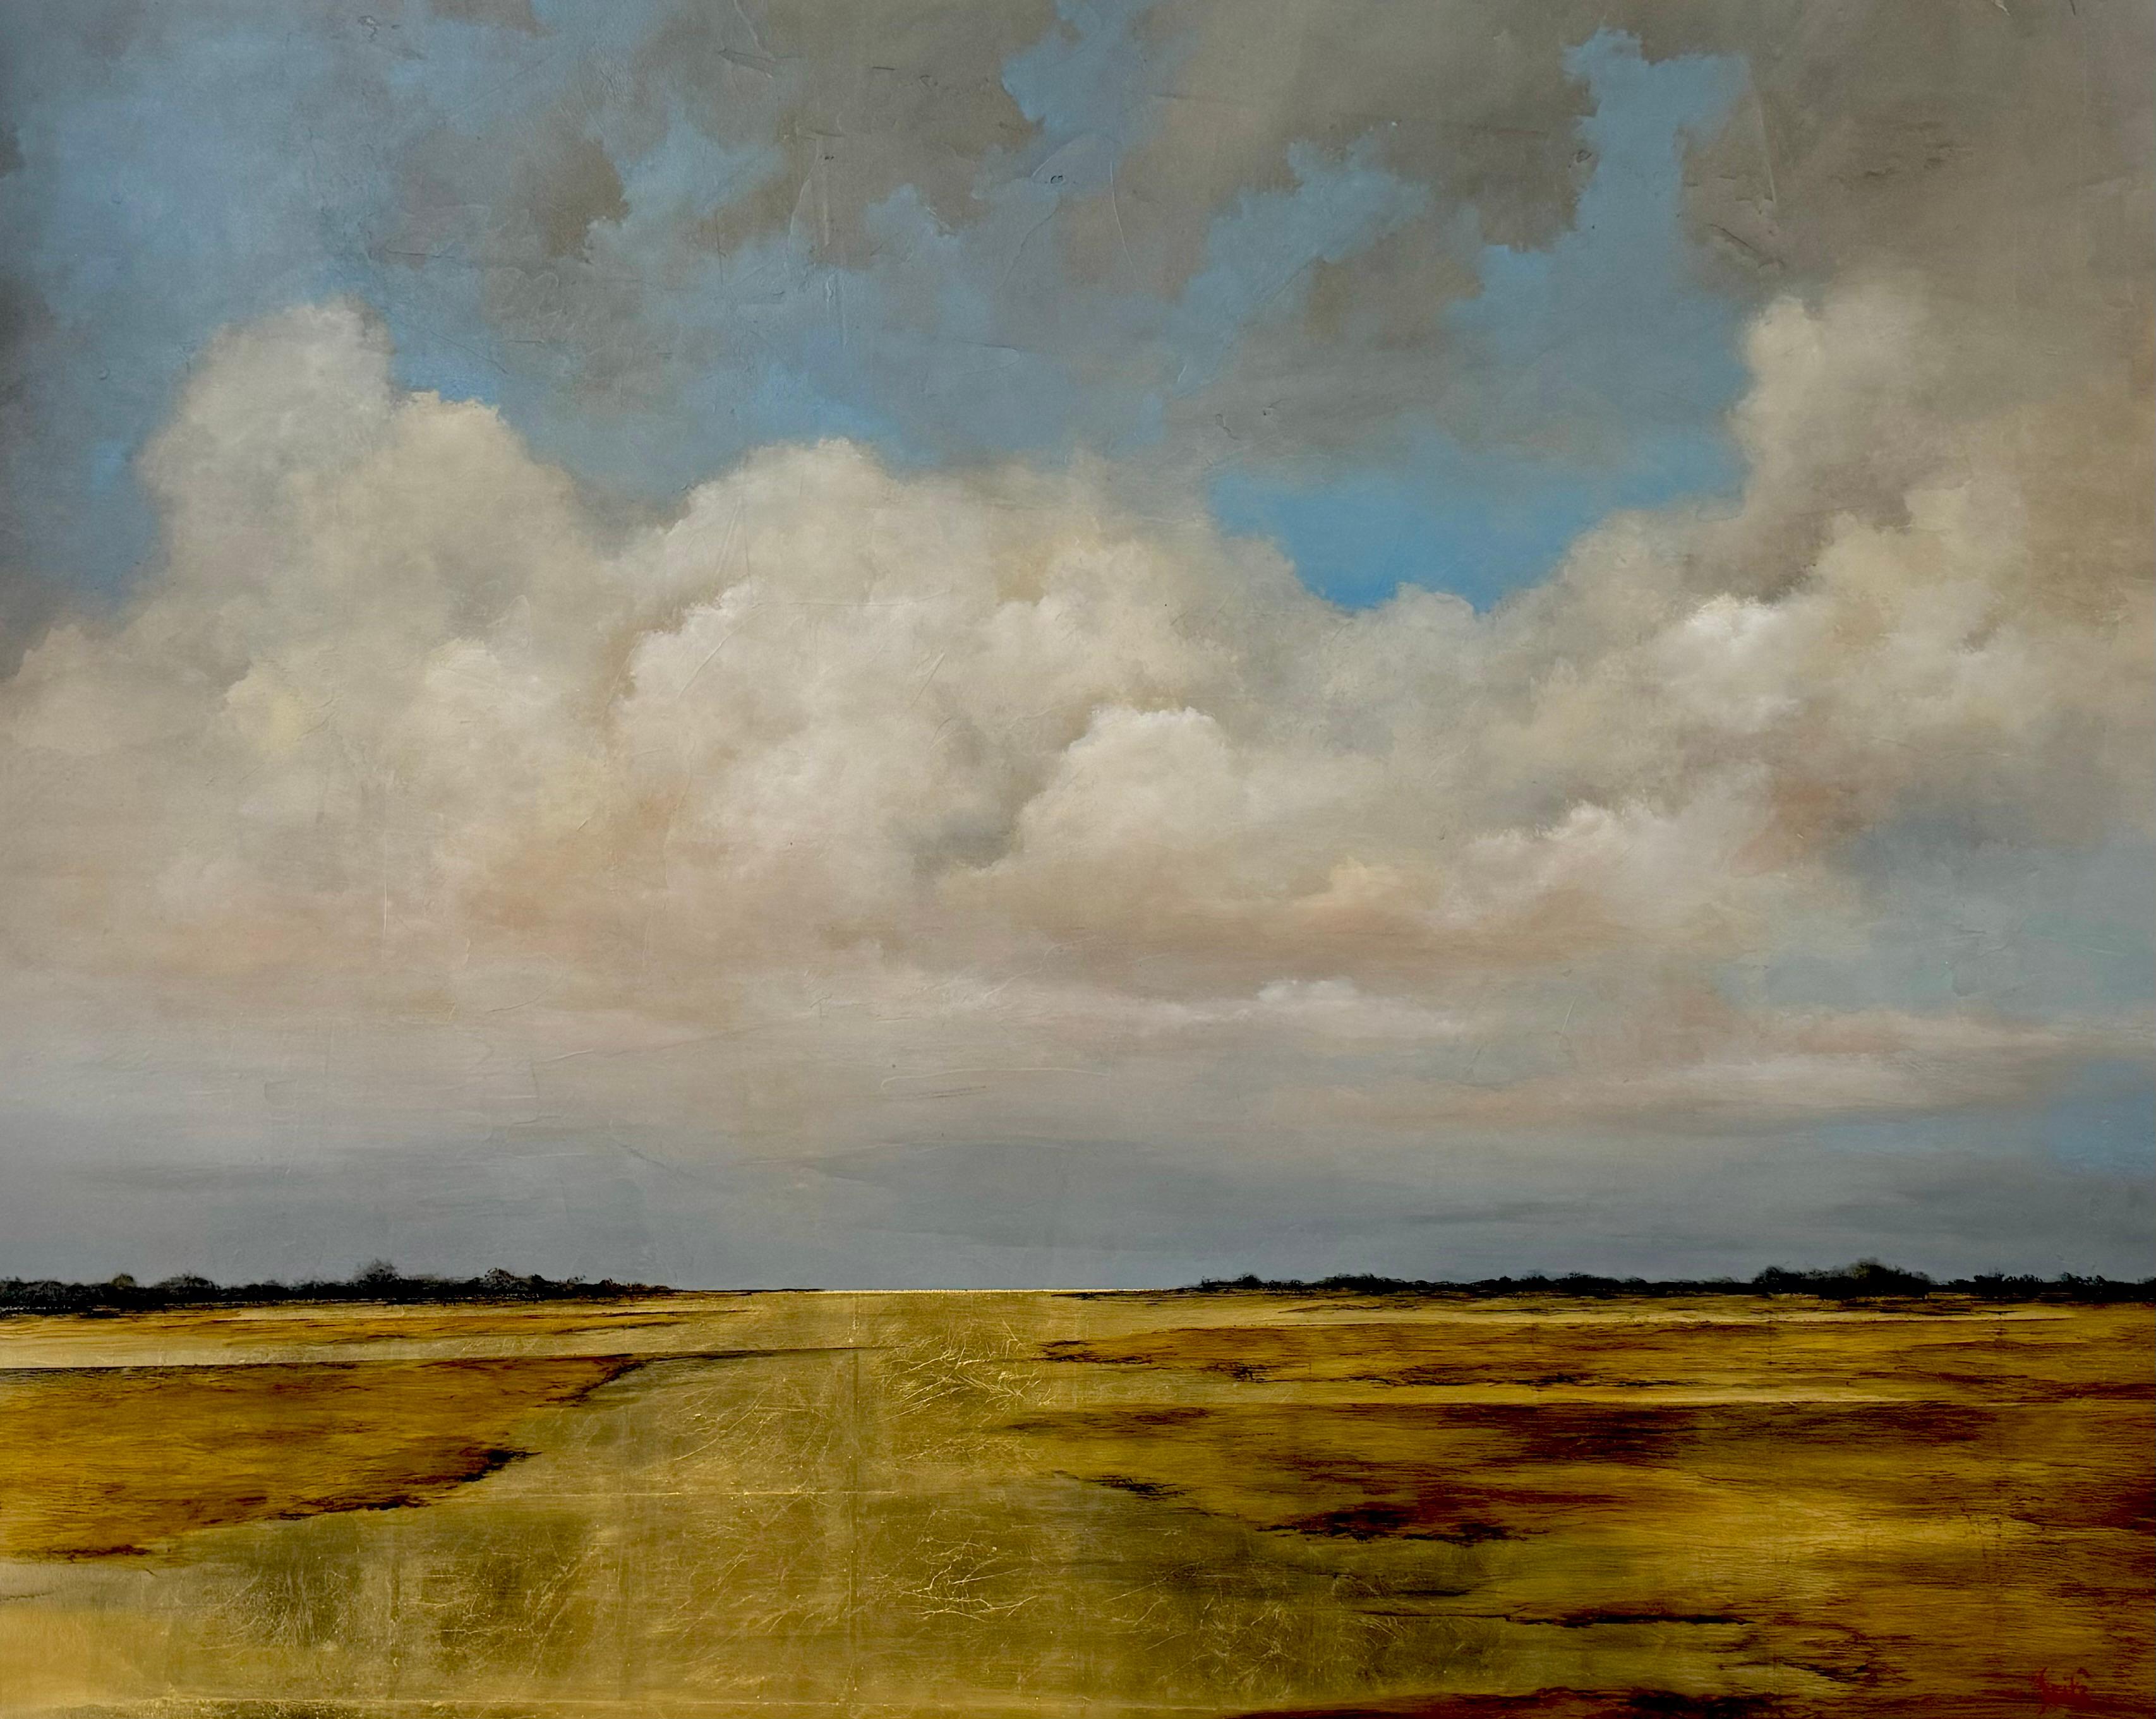 De là à là par Jim Seitz, peinture de paysage horizontale avec feuille d'or